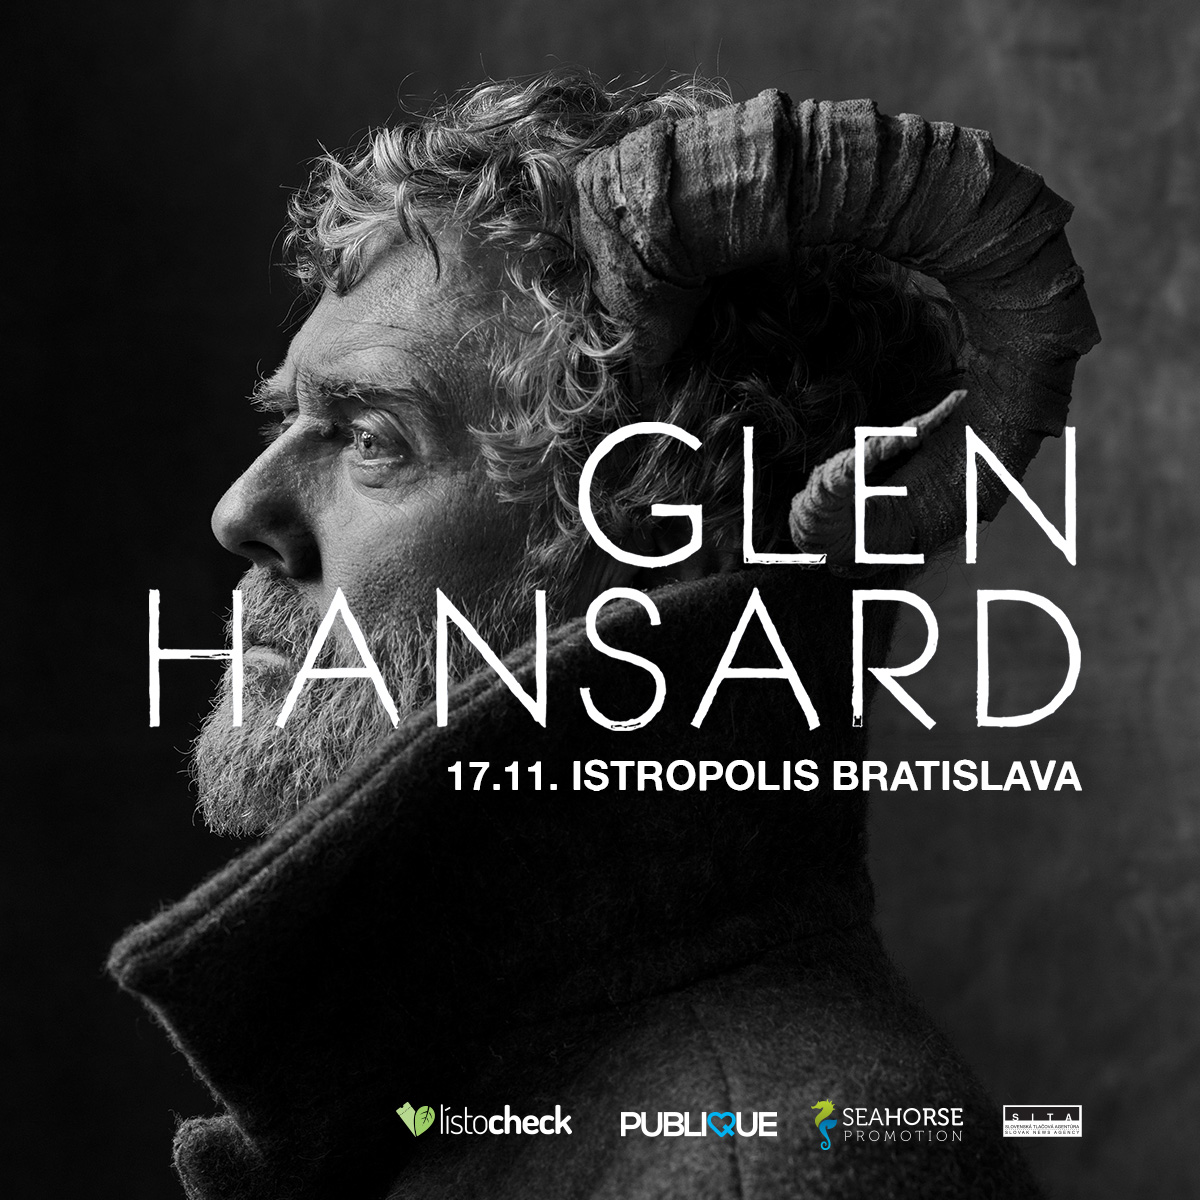 Glen Hansard zahrá v Bratislave v deň výročia nežnej revolúcie